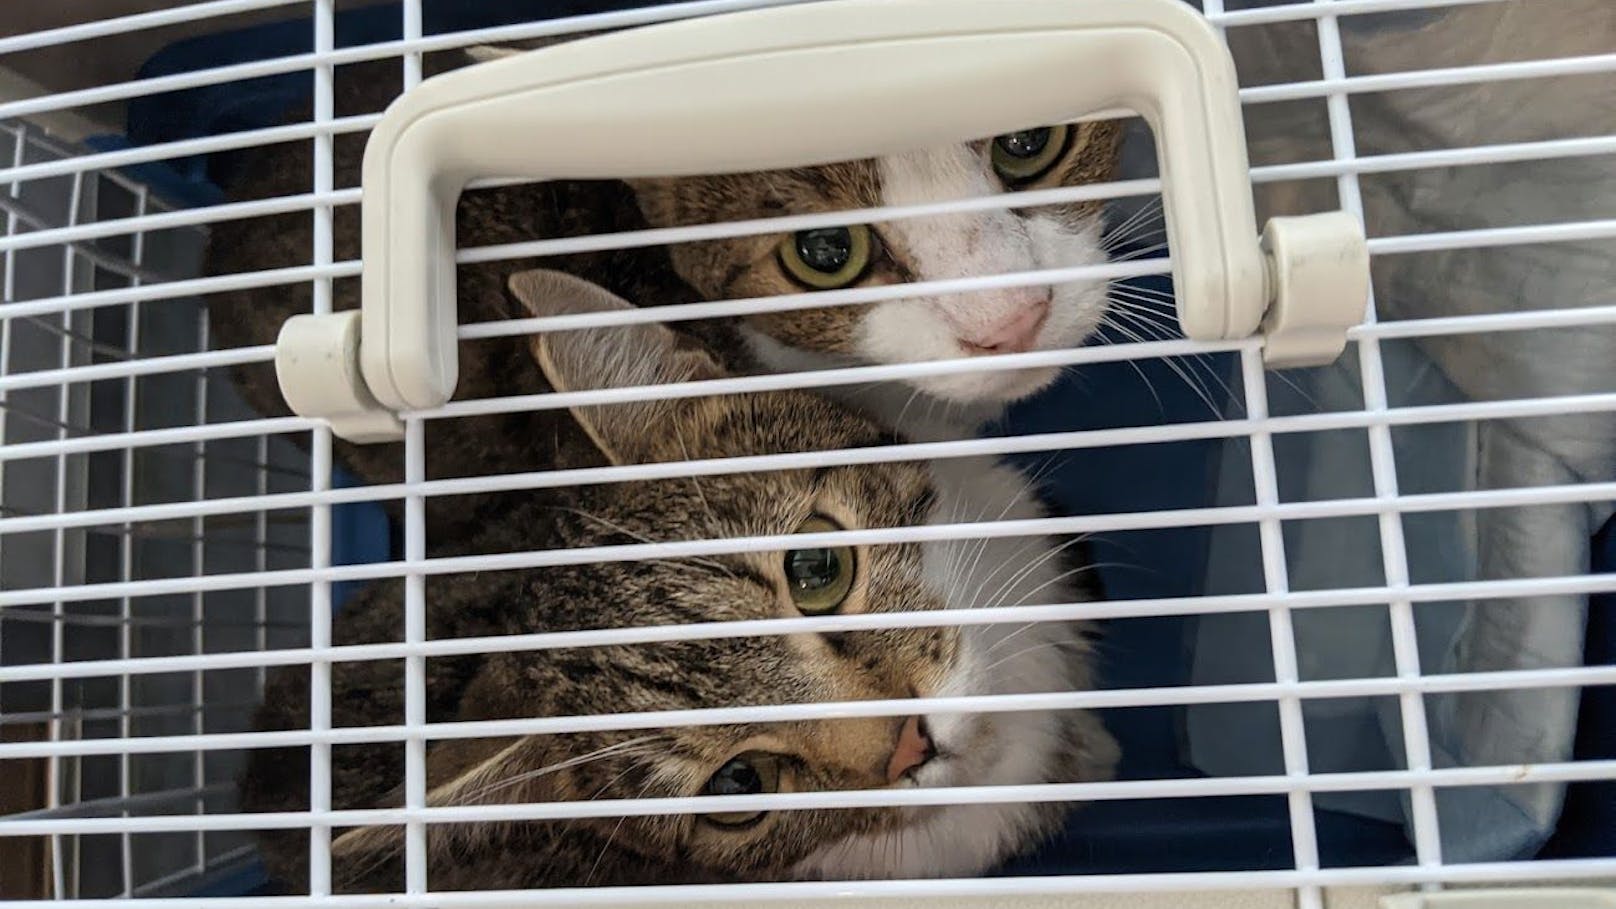 38 Katzen lebten auf kleinstem Raum, der Mieter der Wohnung zog einfach aus und überließ sie ihrem Schicksal.